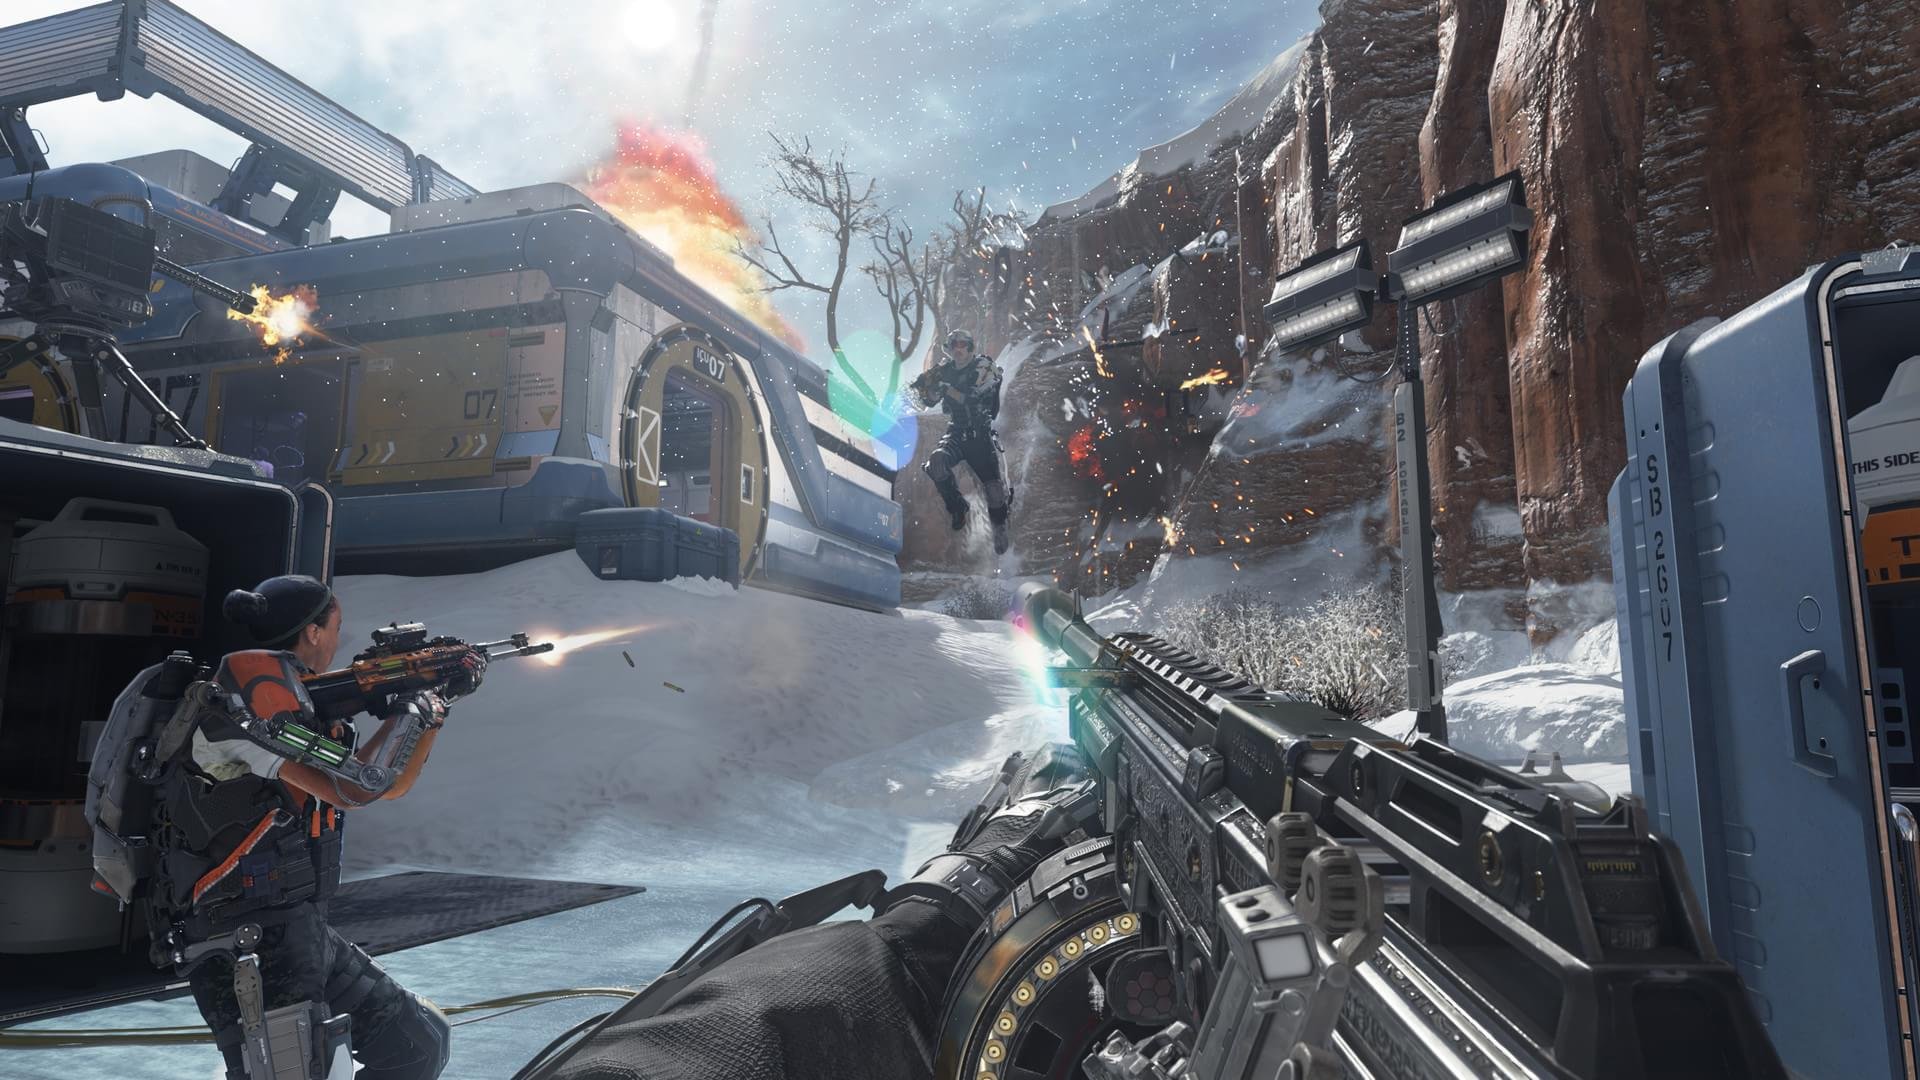 Call of Duty: Black Ops 2 terá vozes famosas; conheça os dubladores